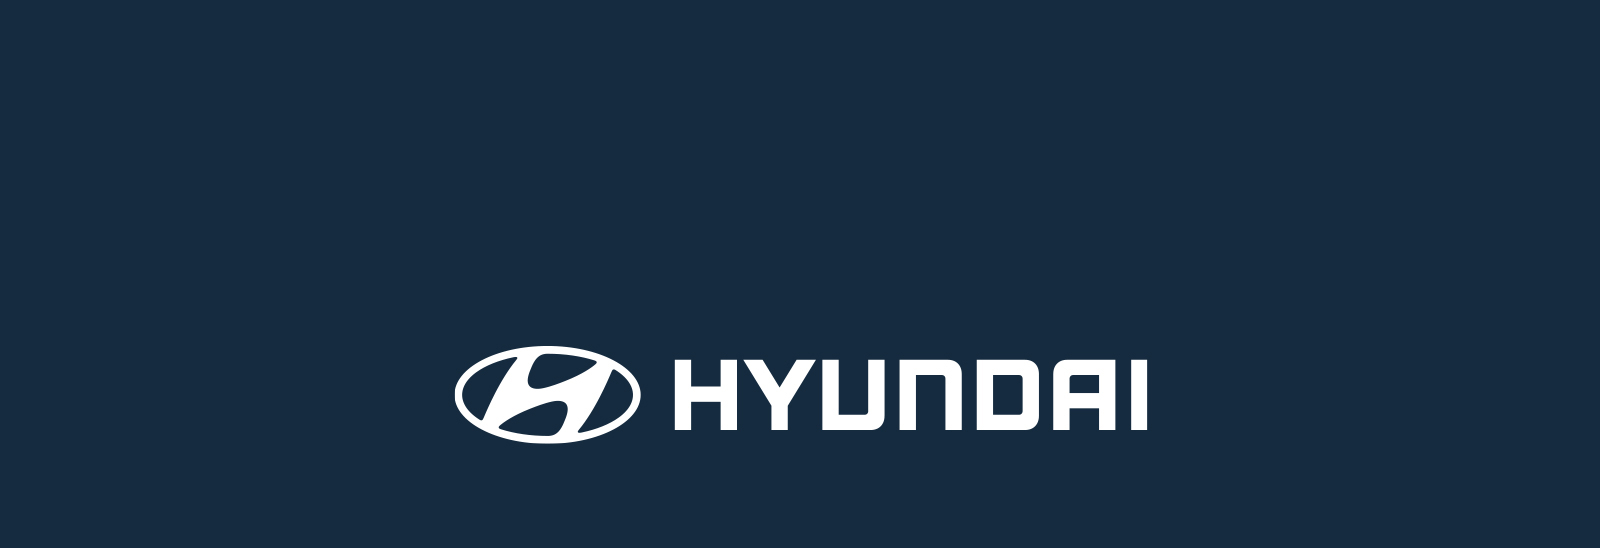 Logo de Hyundai en color blanco sobre fondo azul